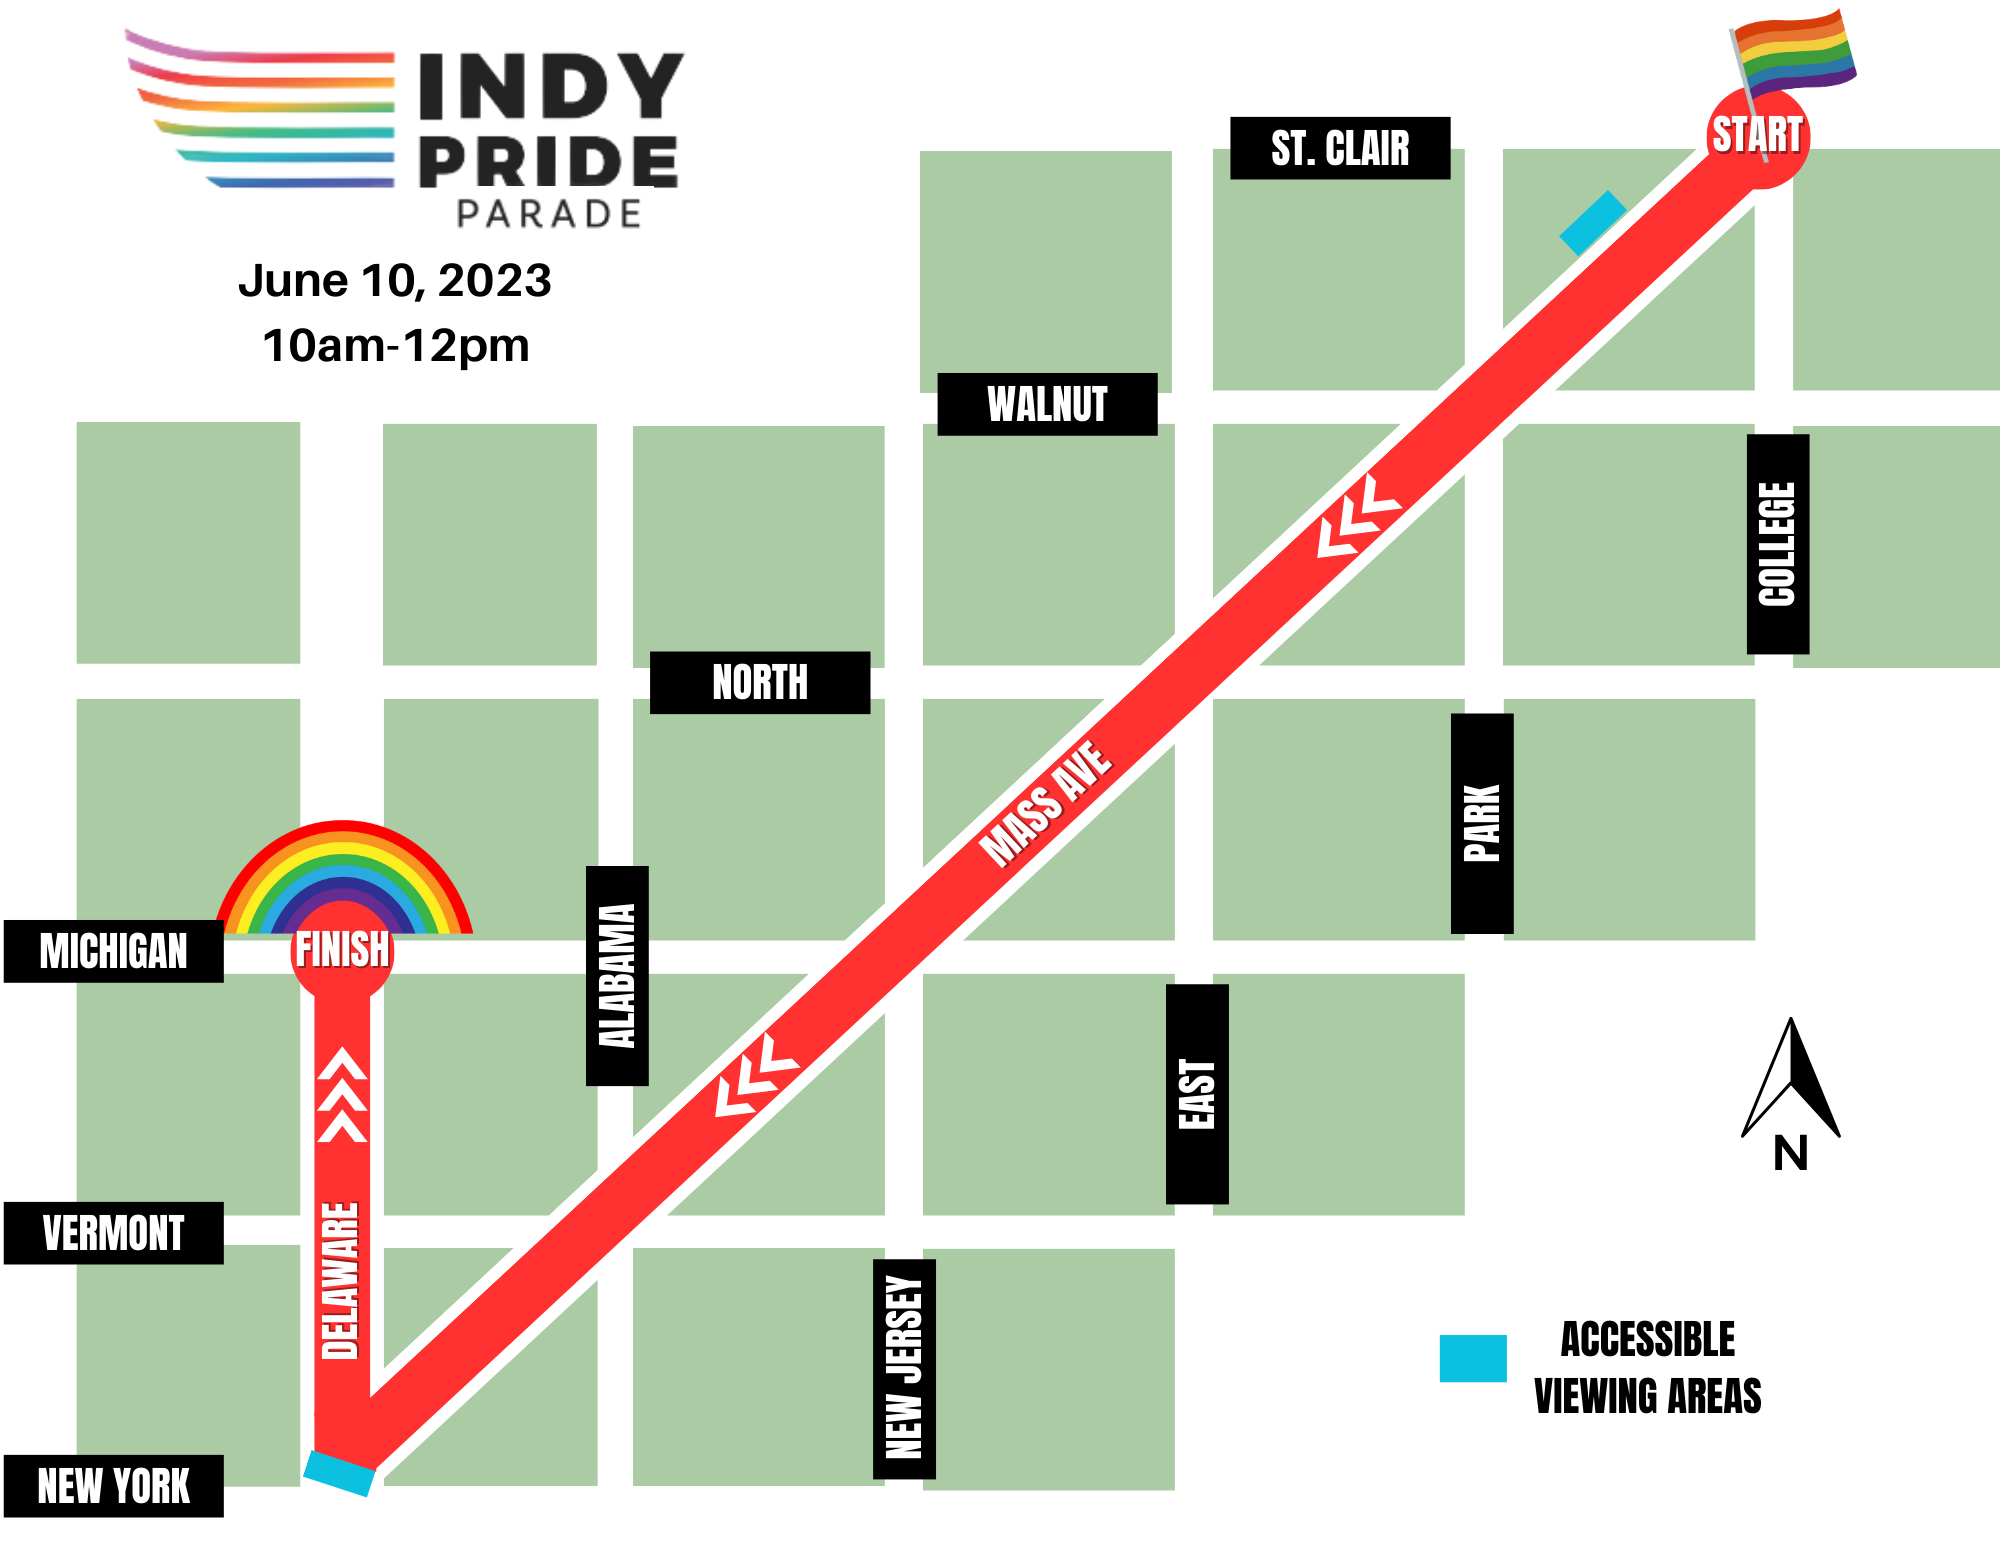 Indy Pride Parade Indy Pride, Inc.